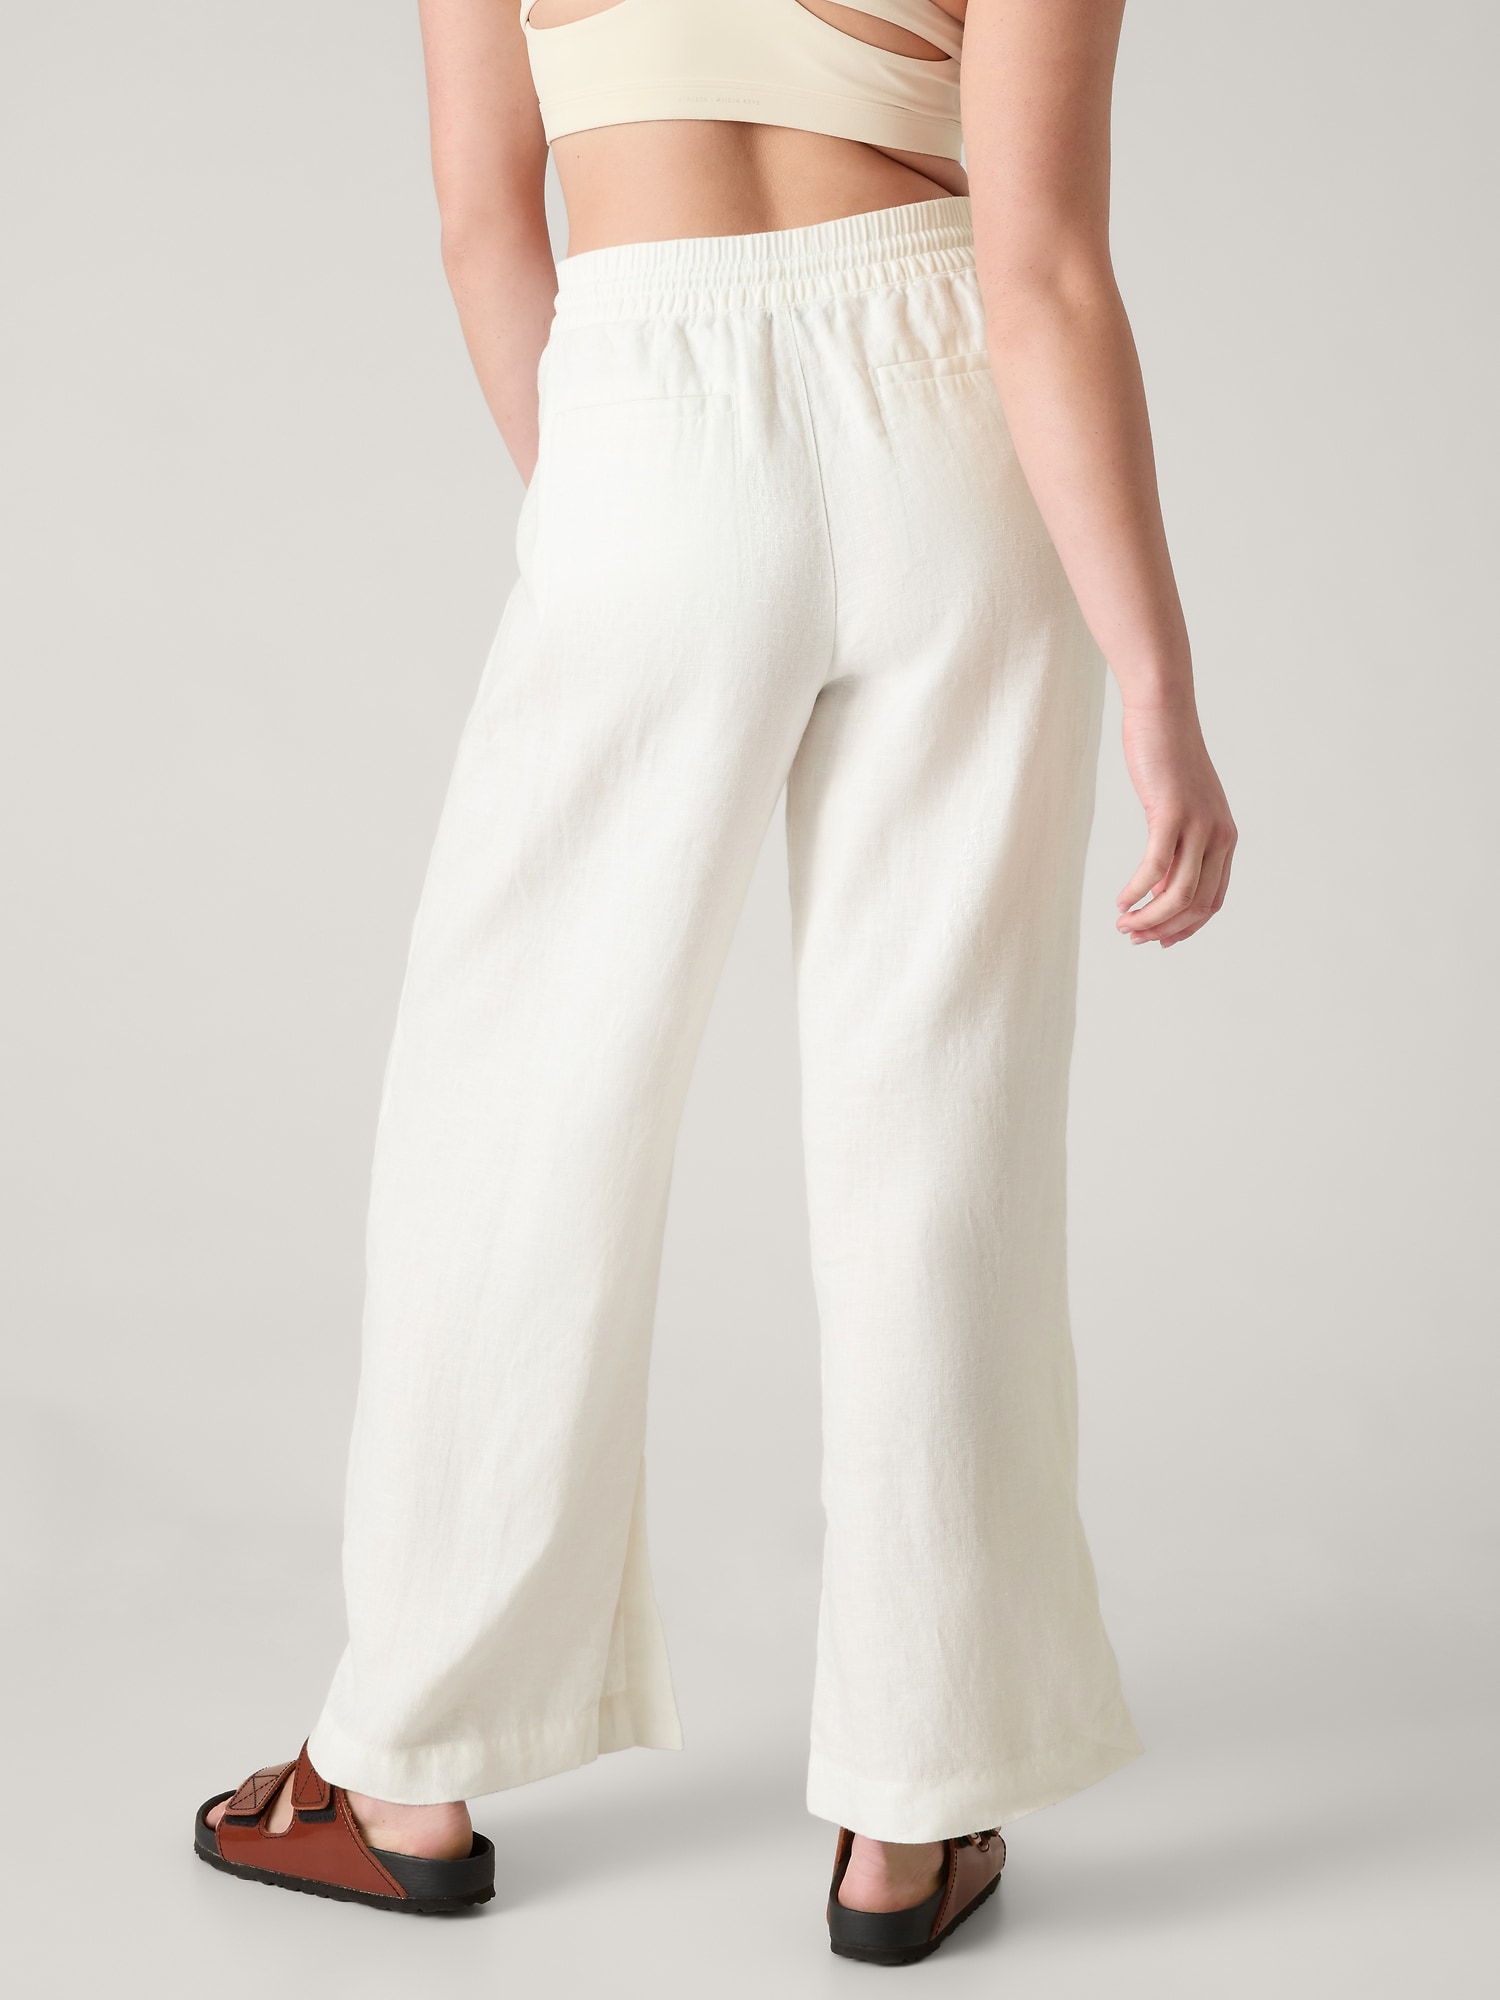 White Linen Pants Women, Wide Leg Linen Pants, Palazzo Pants White